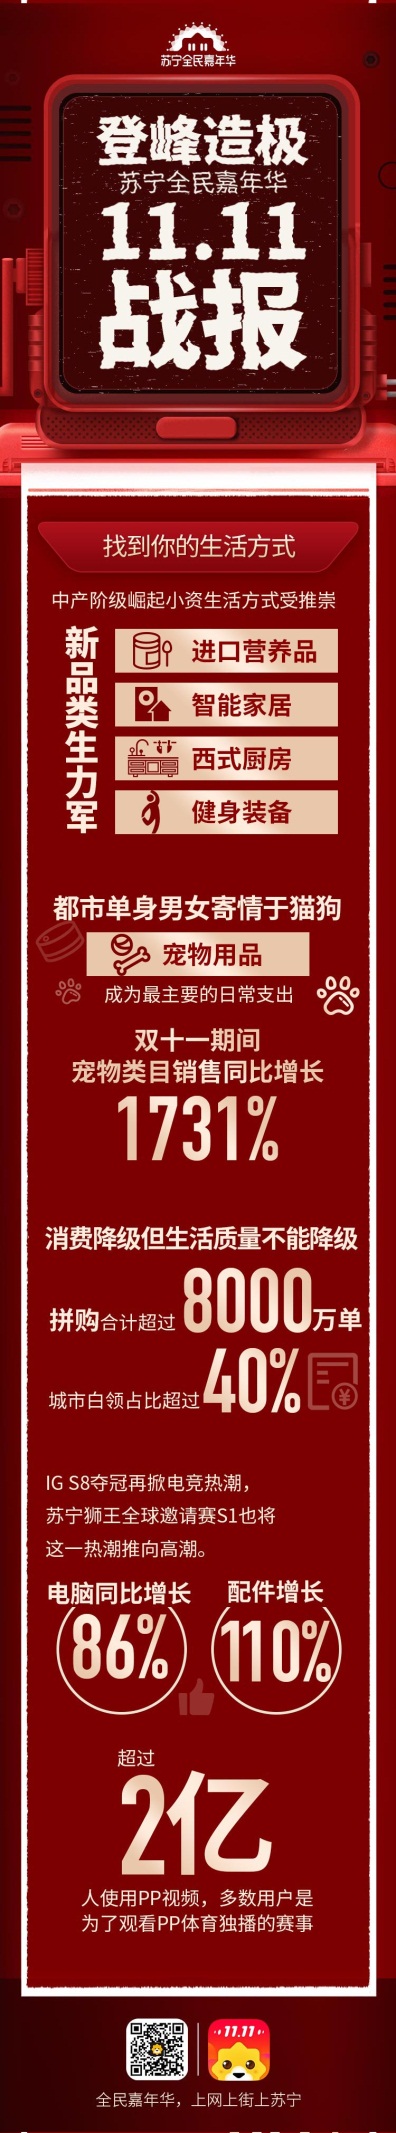 双十一苏宁线上线下模式效益凸显，全渠道订单量同比增长132%